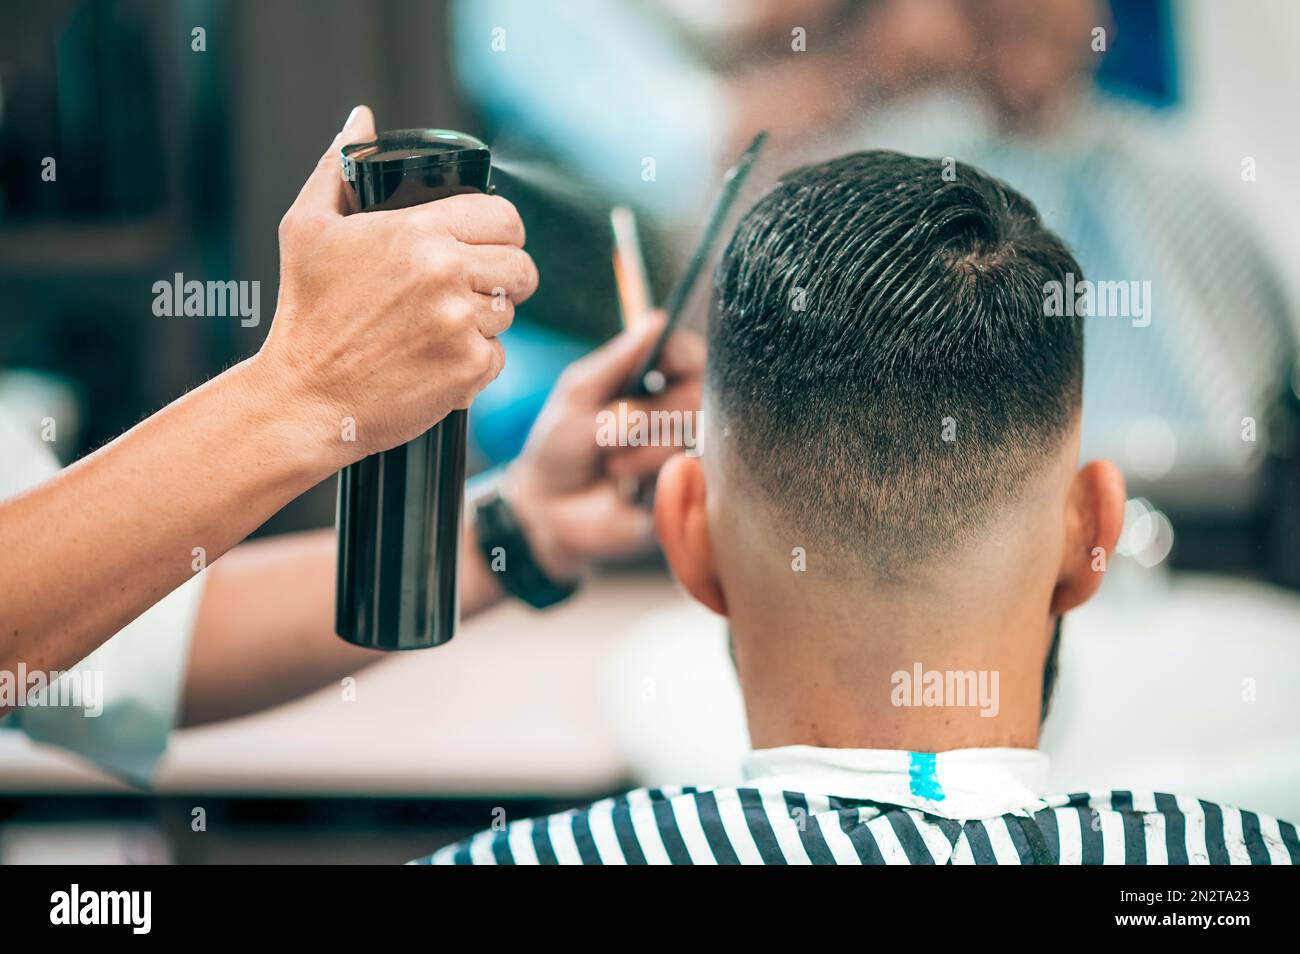 Rückansicht eines männlichen Klienten, der Haare schneidet, während ein Friseur die Haare in einem modernen Friseursalon nass macht Stockfoto